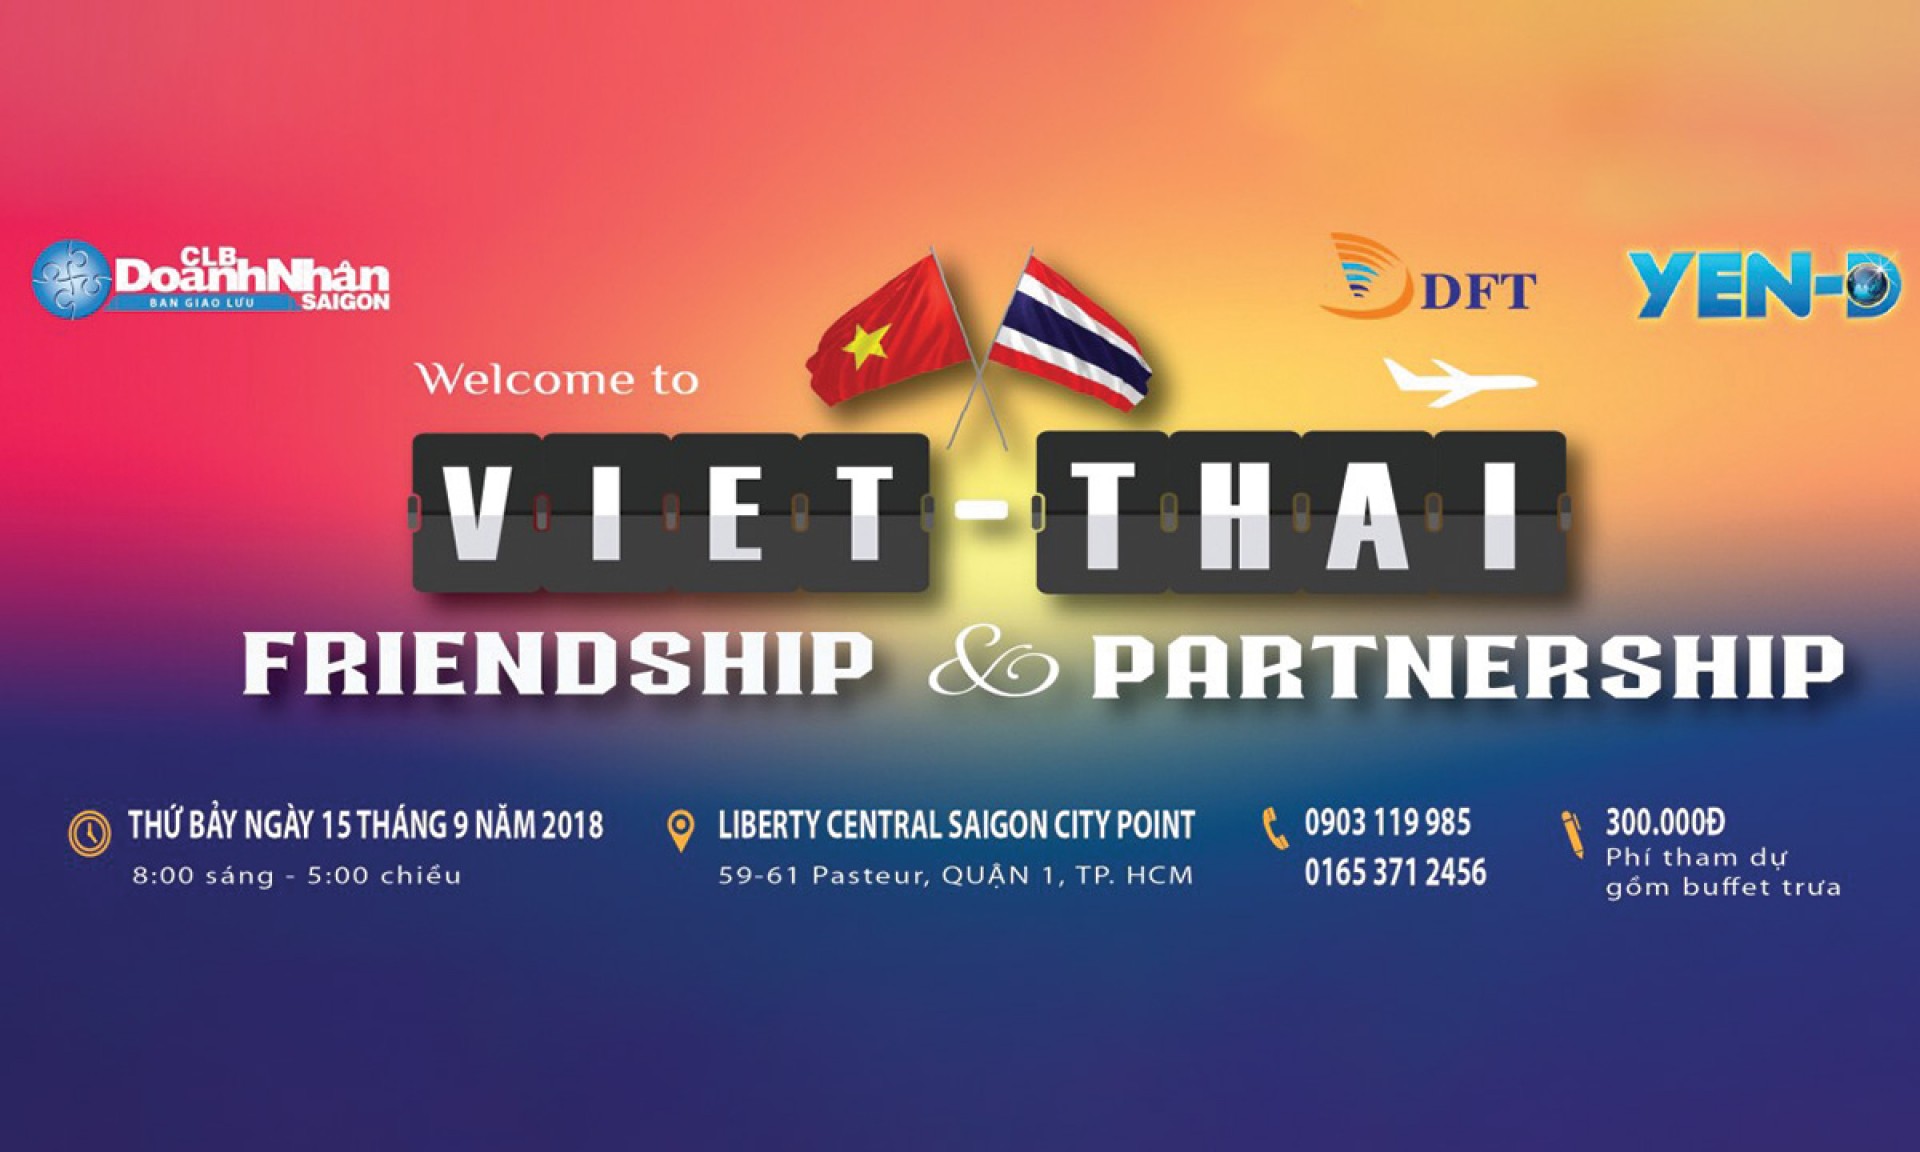 Gần 100 thương hiệu Thái Lan tìm cơ hội hợp tác tại TP HCM 09/2018